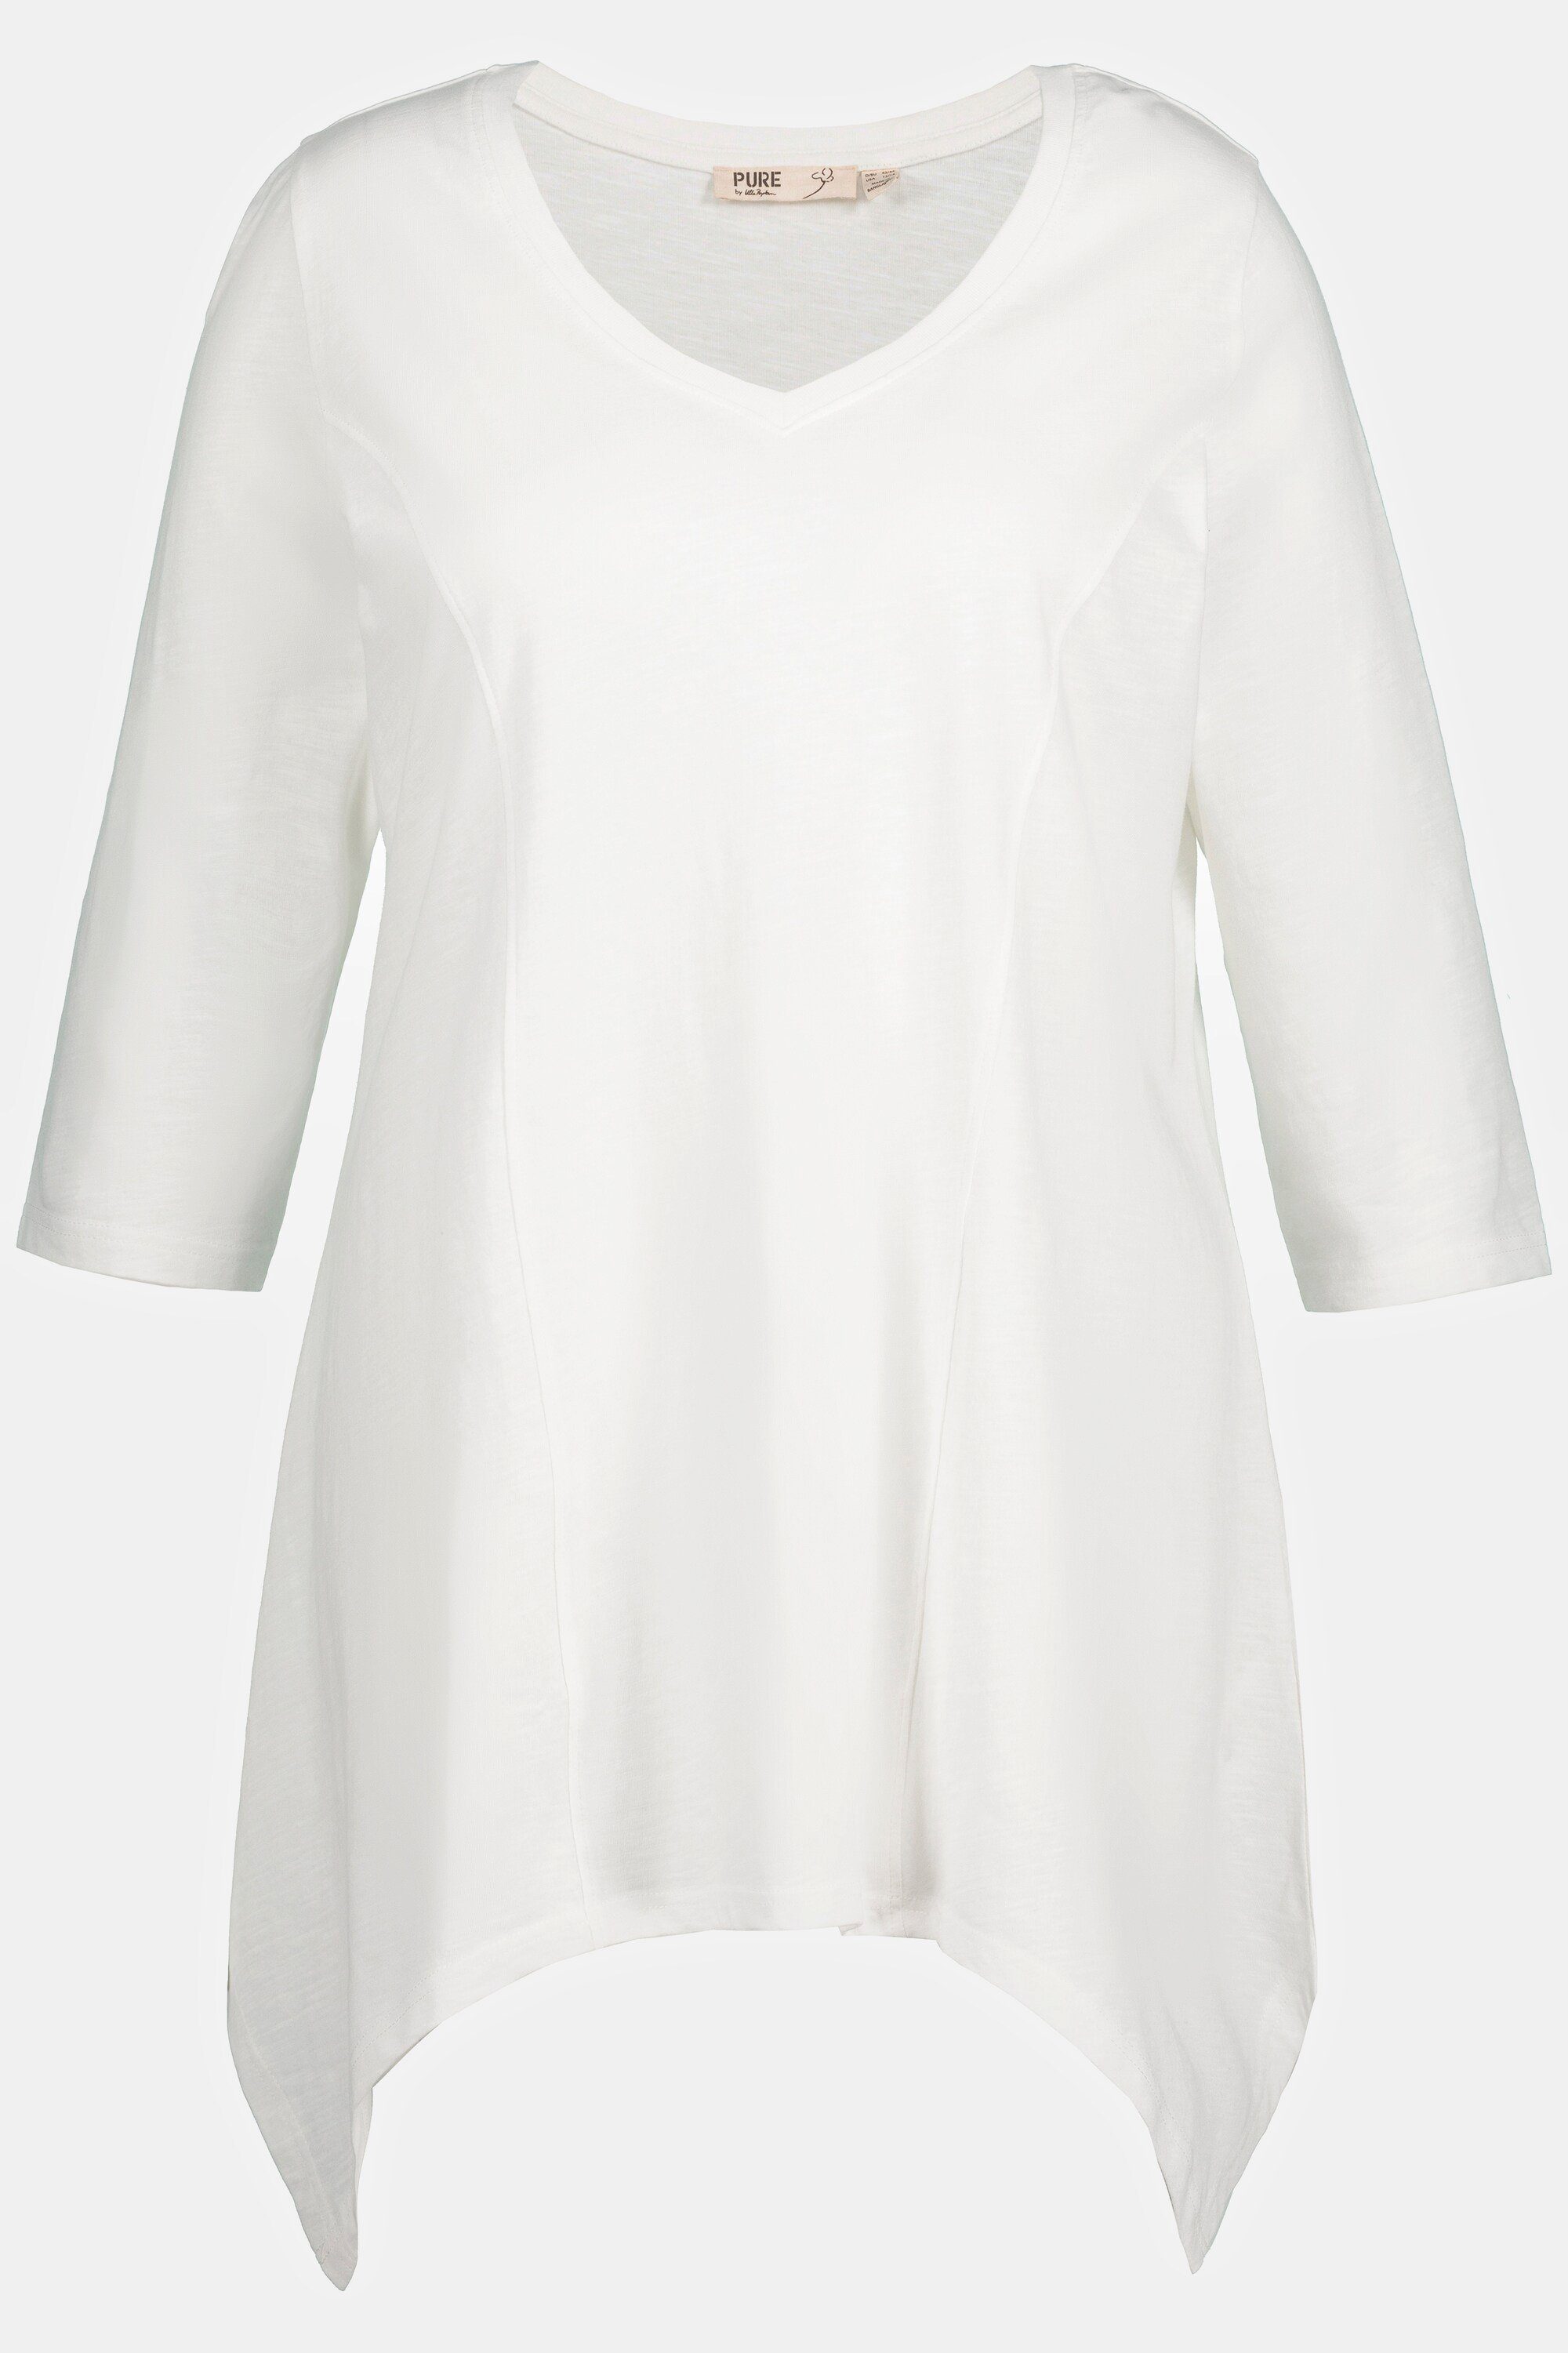 Zipfelsaum Biobaumwolle Shirt V-Ausschnitt Rundhalsshirt Ulla 3/4-Arm offwhite Popken